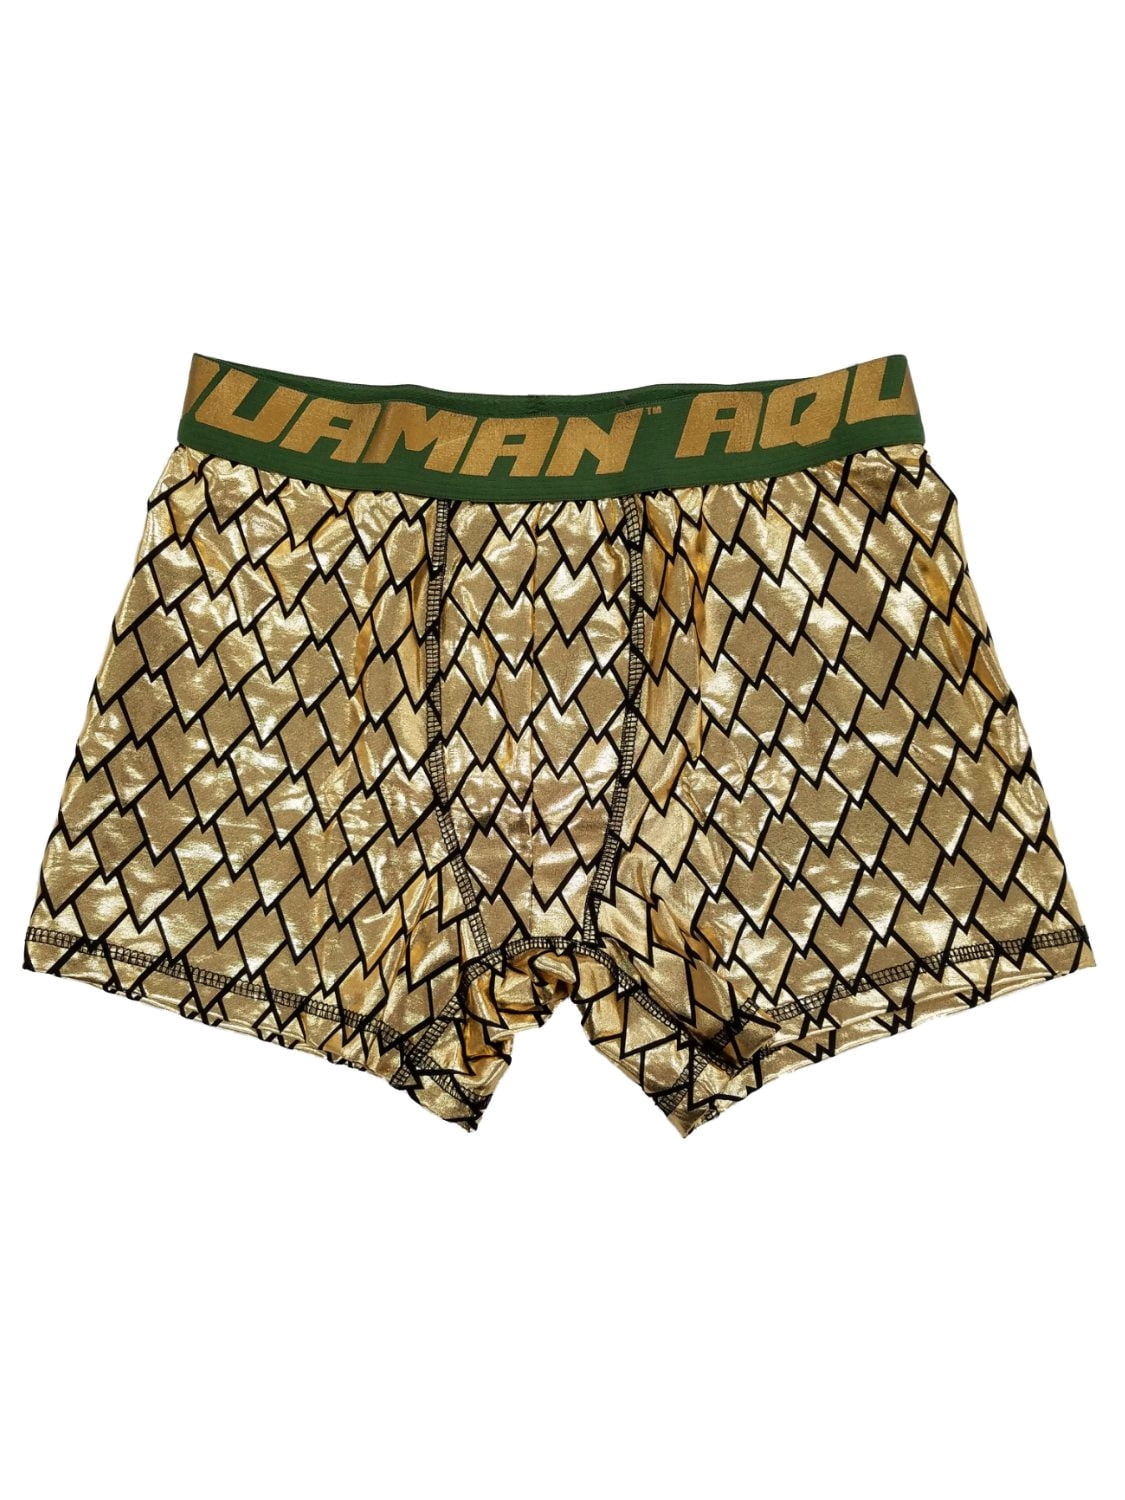 Aquaman Justice League DC Comics Mens Gold Lamé Underwear Boxer Briefs S